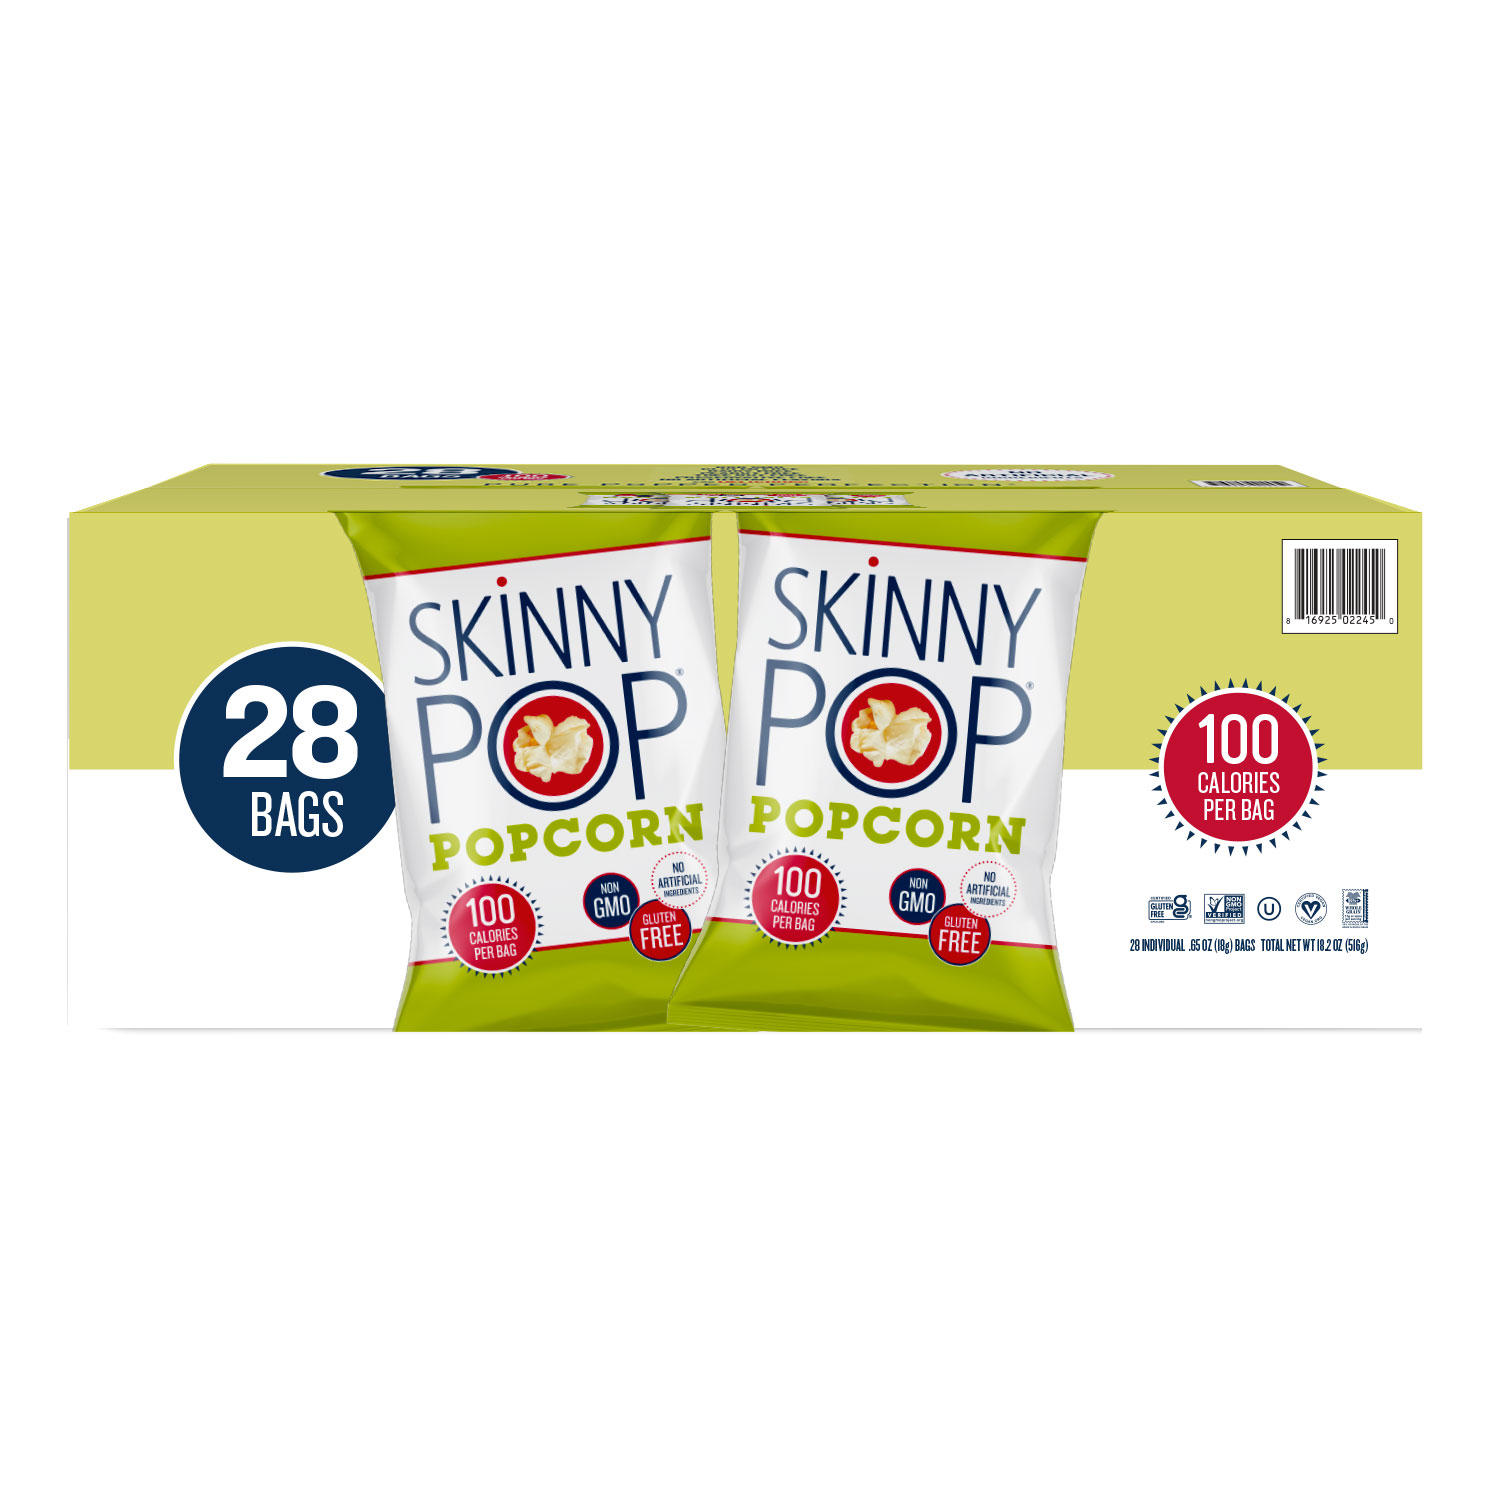 SkinnyPop Original Popcorn Snack Bags 0.65 oz, 28 pk.